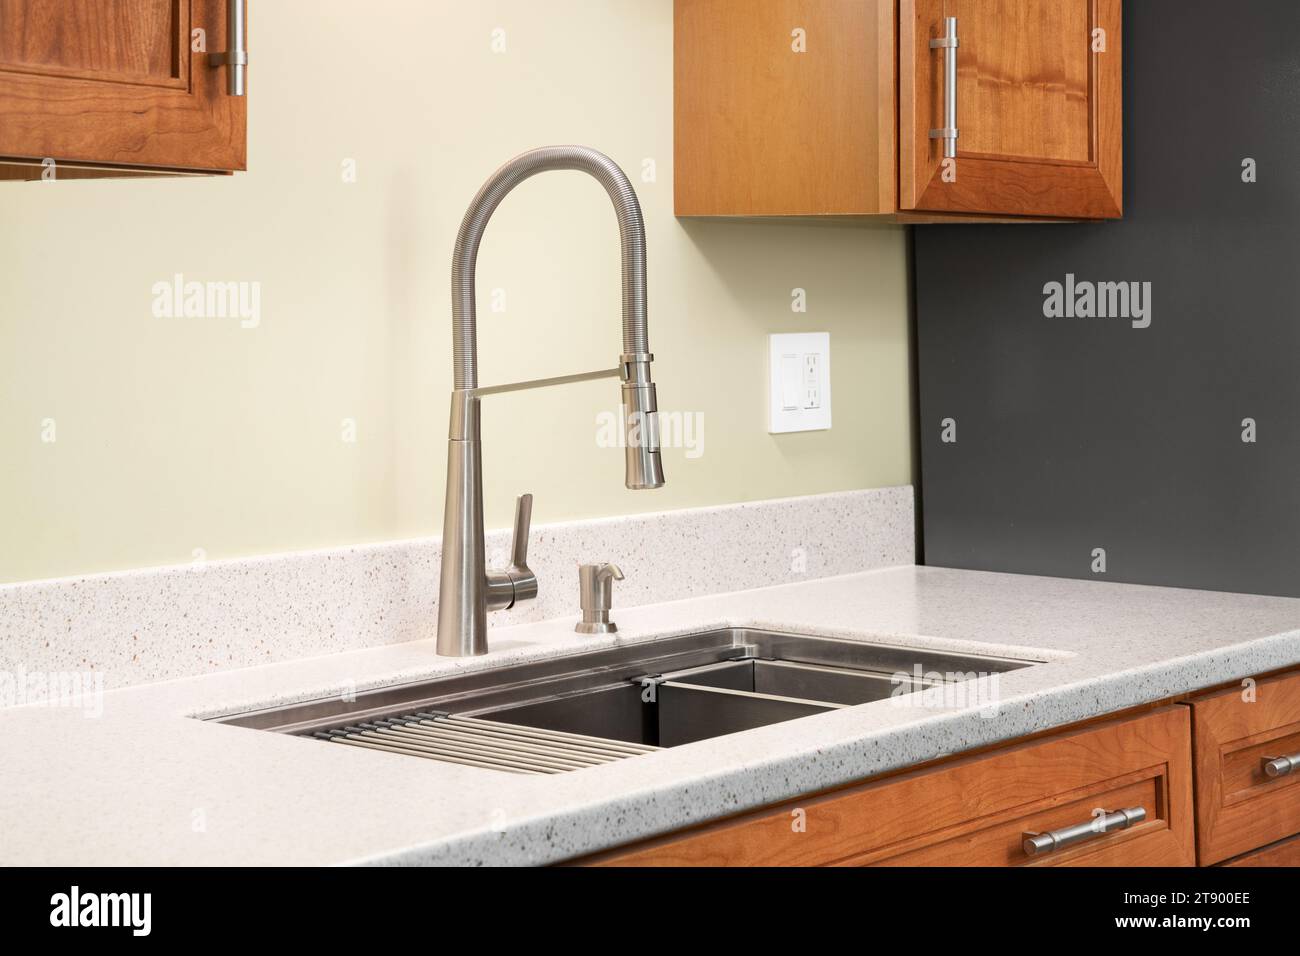 Un détail de robinet de cuisine avec un comptoir en quartz, des armoires en bois et un robinet à poignée unique en acier inoxydable. Banque D'Images